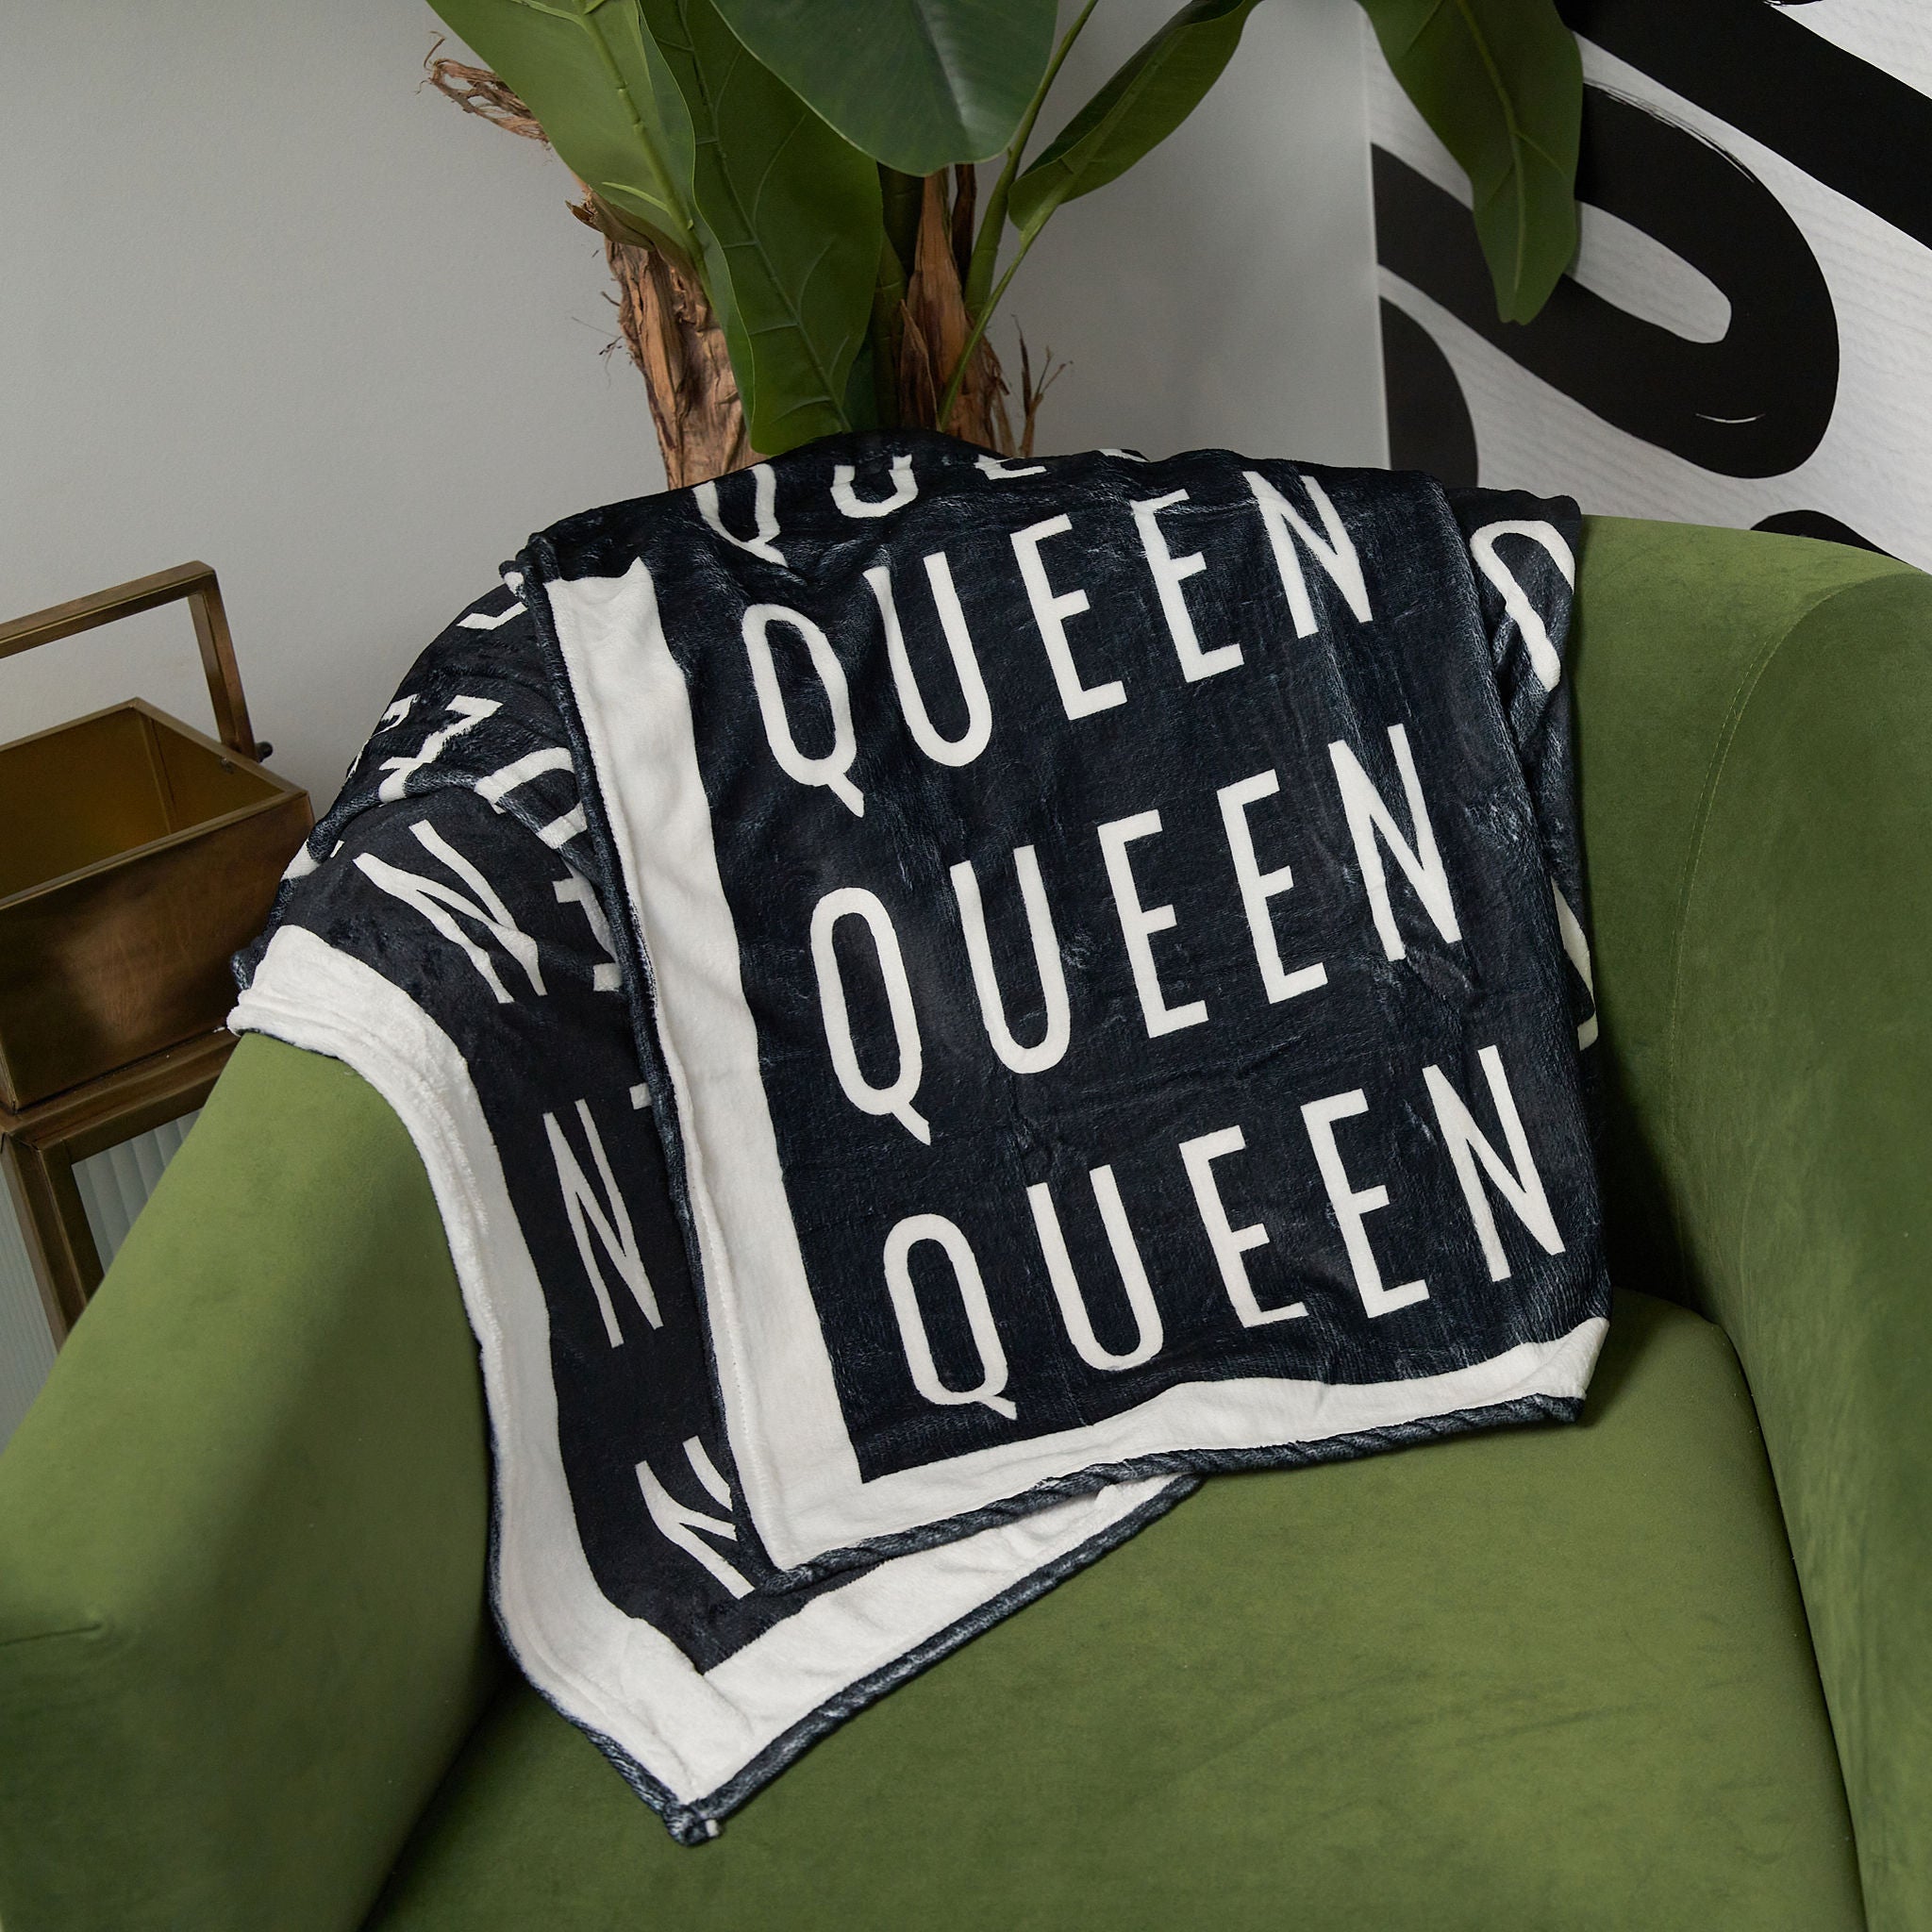 Fleece Blanket - Queen | Free Gift With $199+ Purchase - Sassy Jones